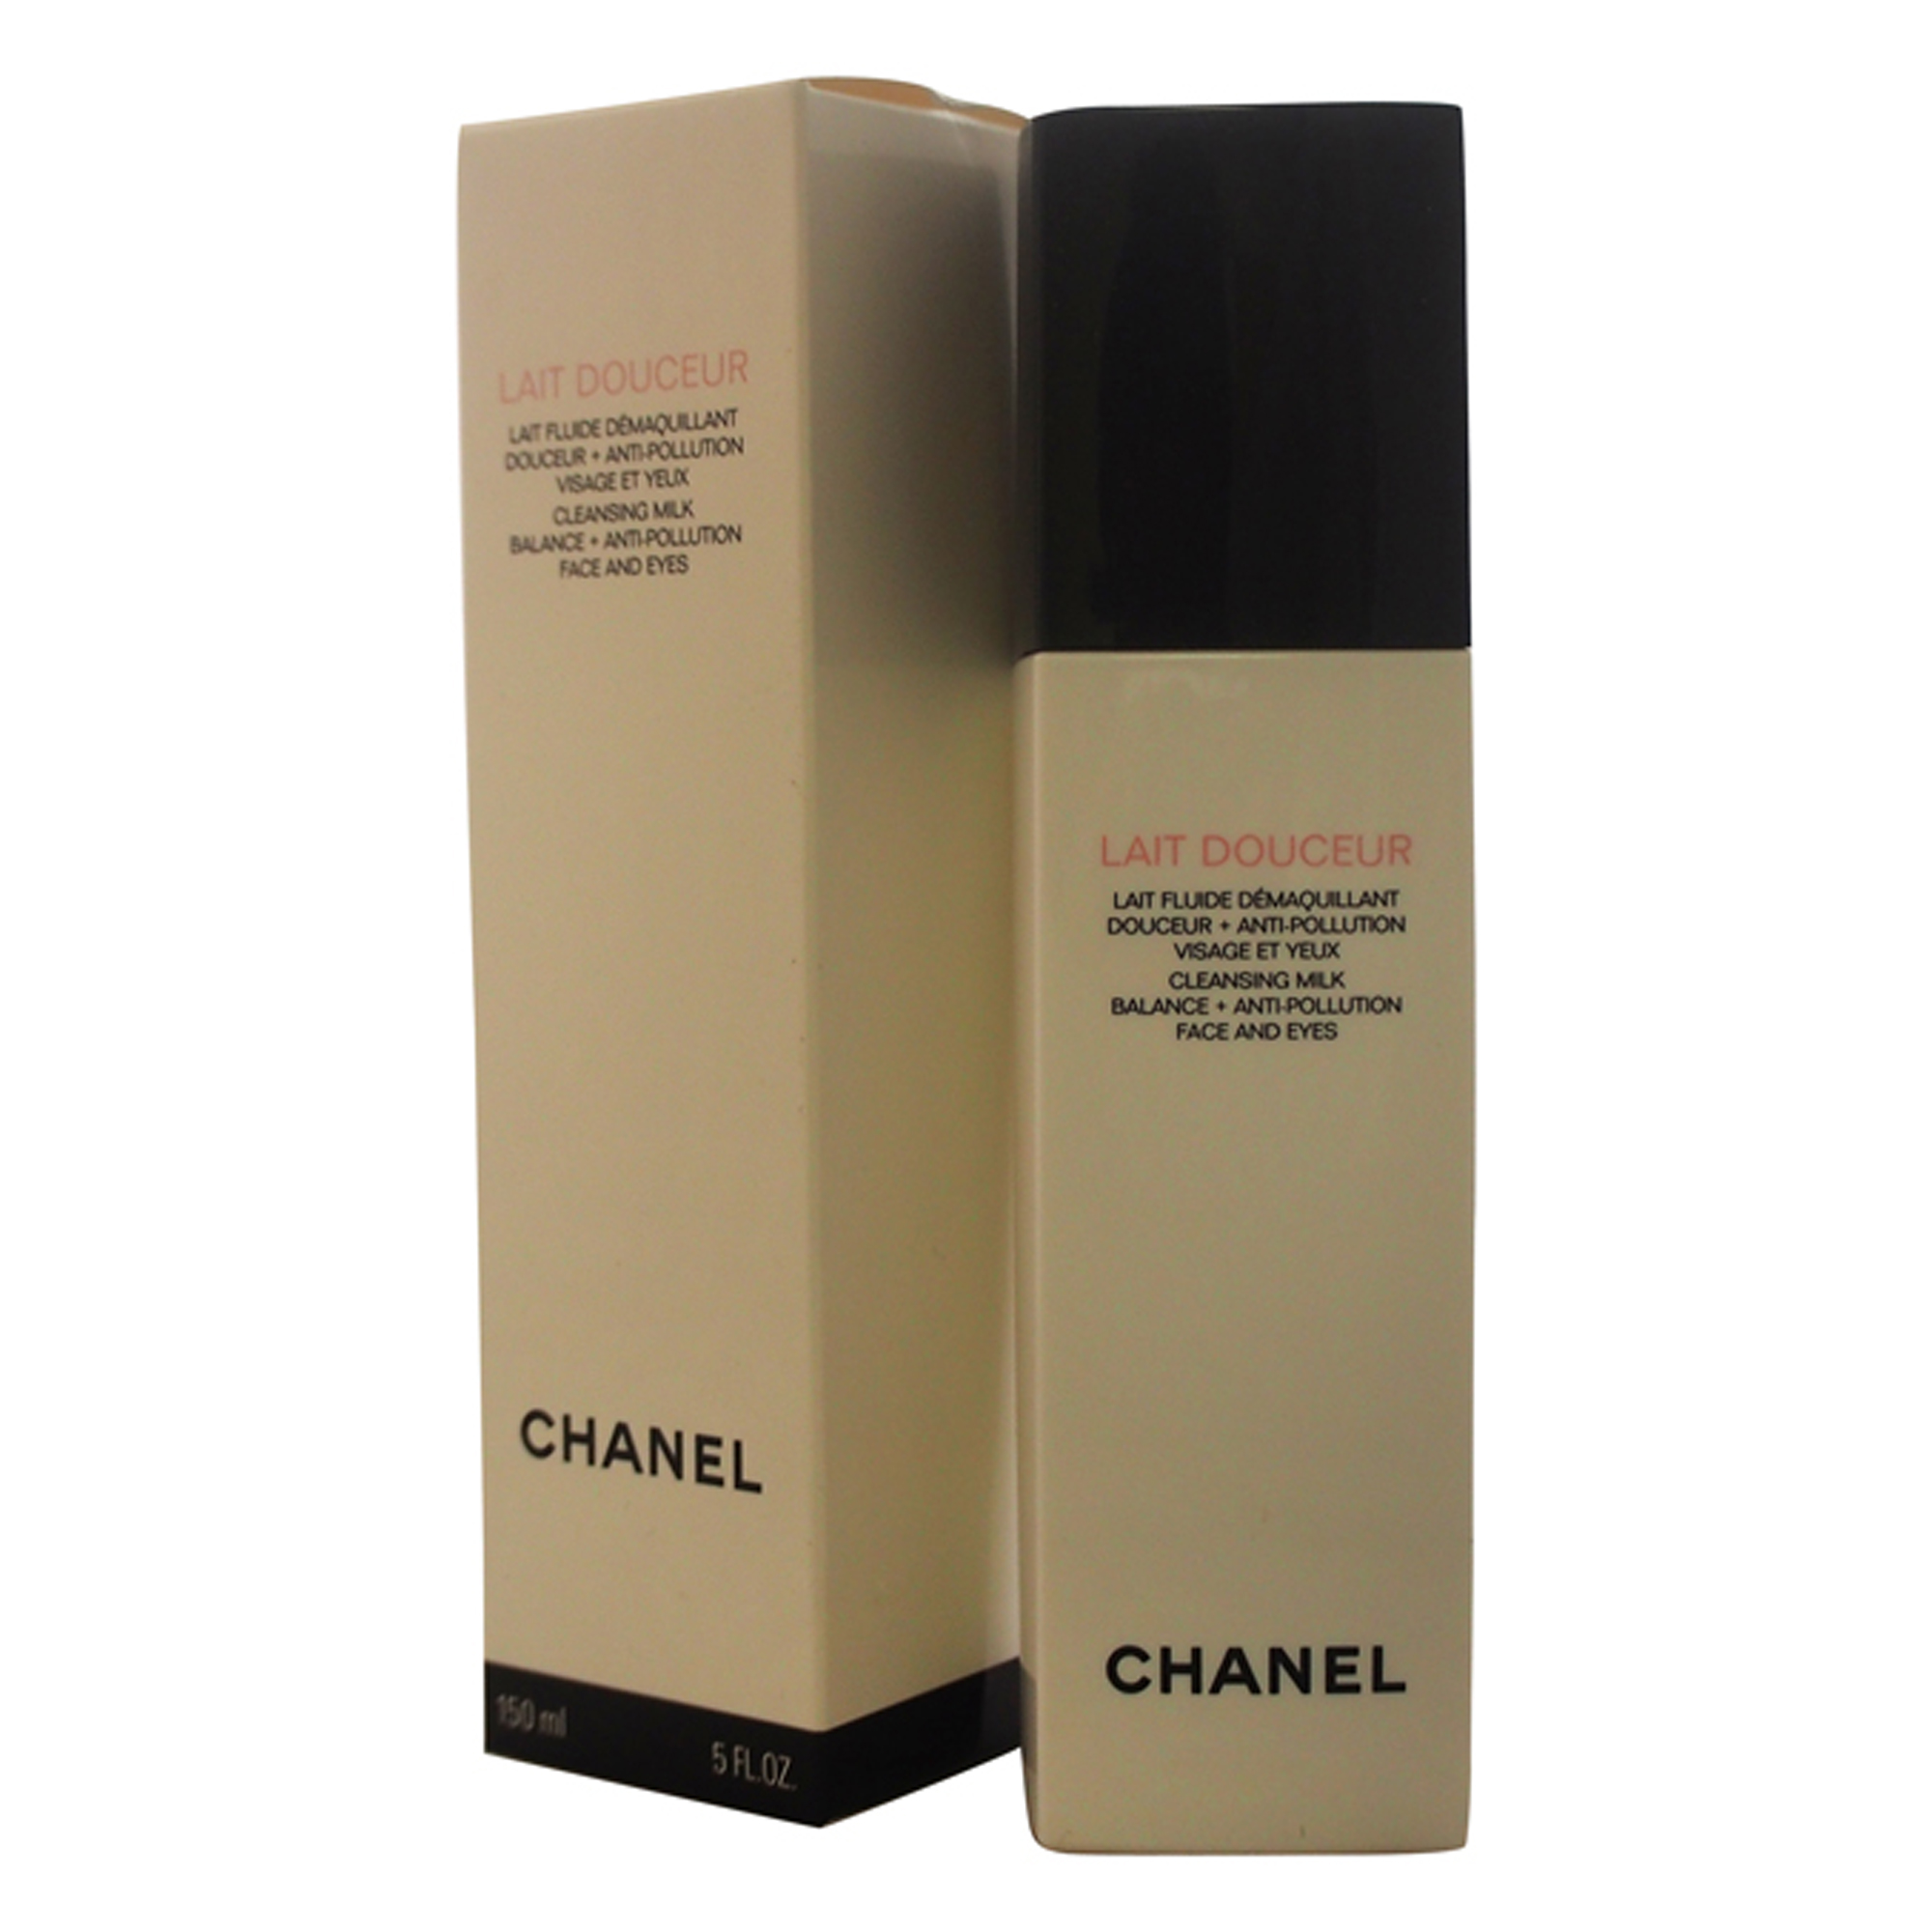 Chanel Lait Douceur Cleansing Milk - 5 oz